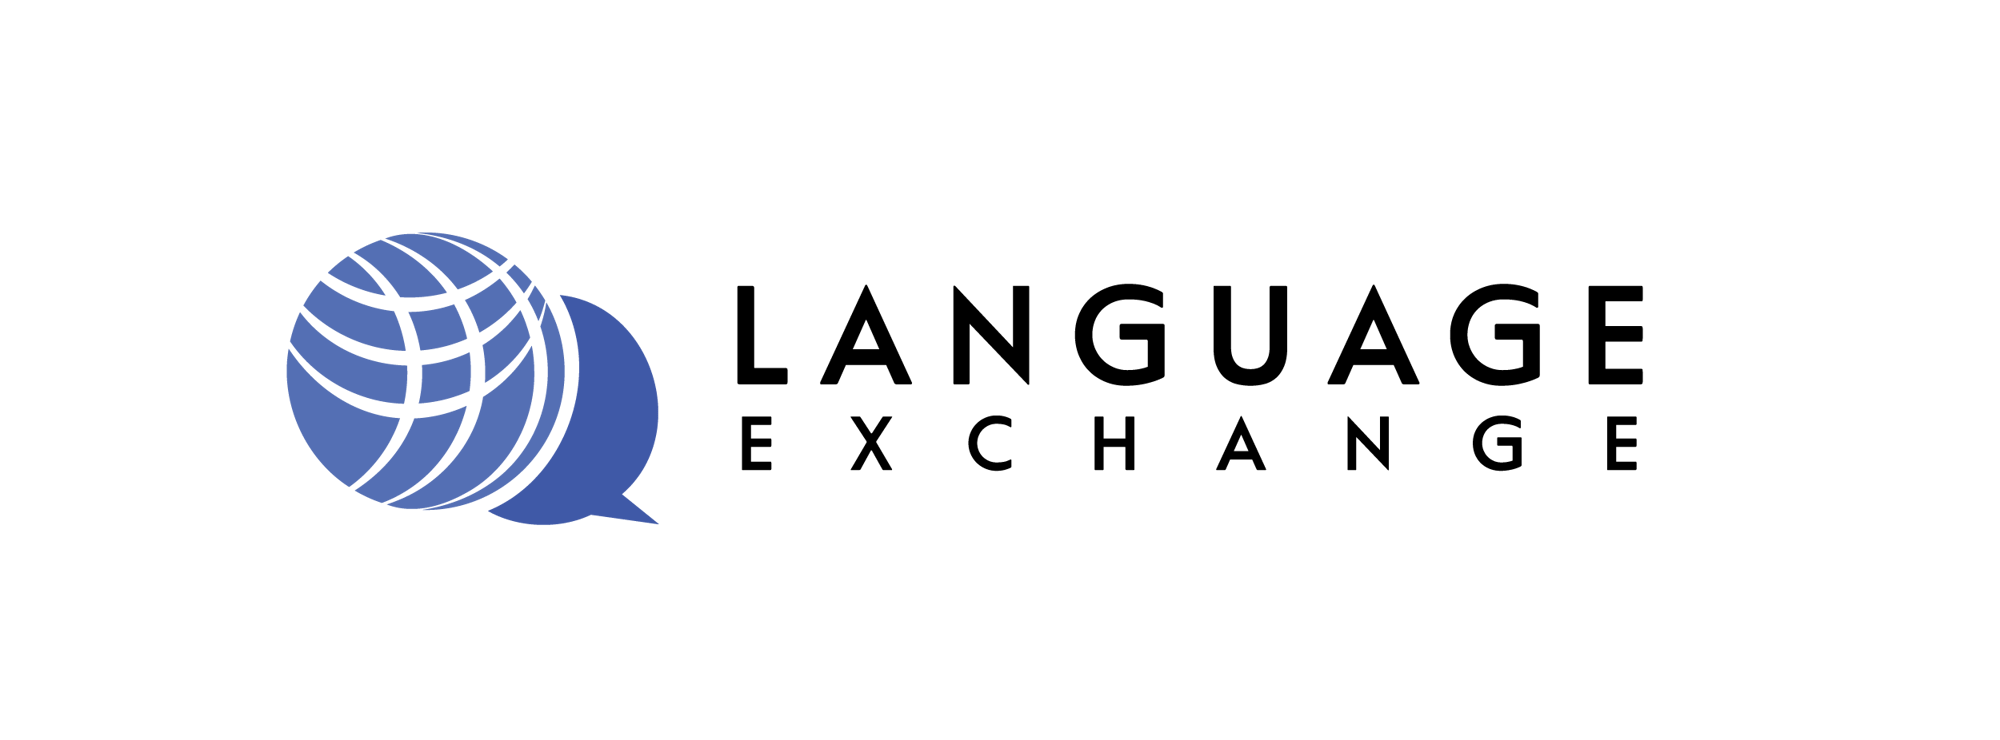 Language Exchange-blue-1